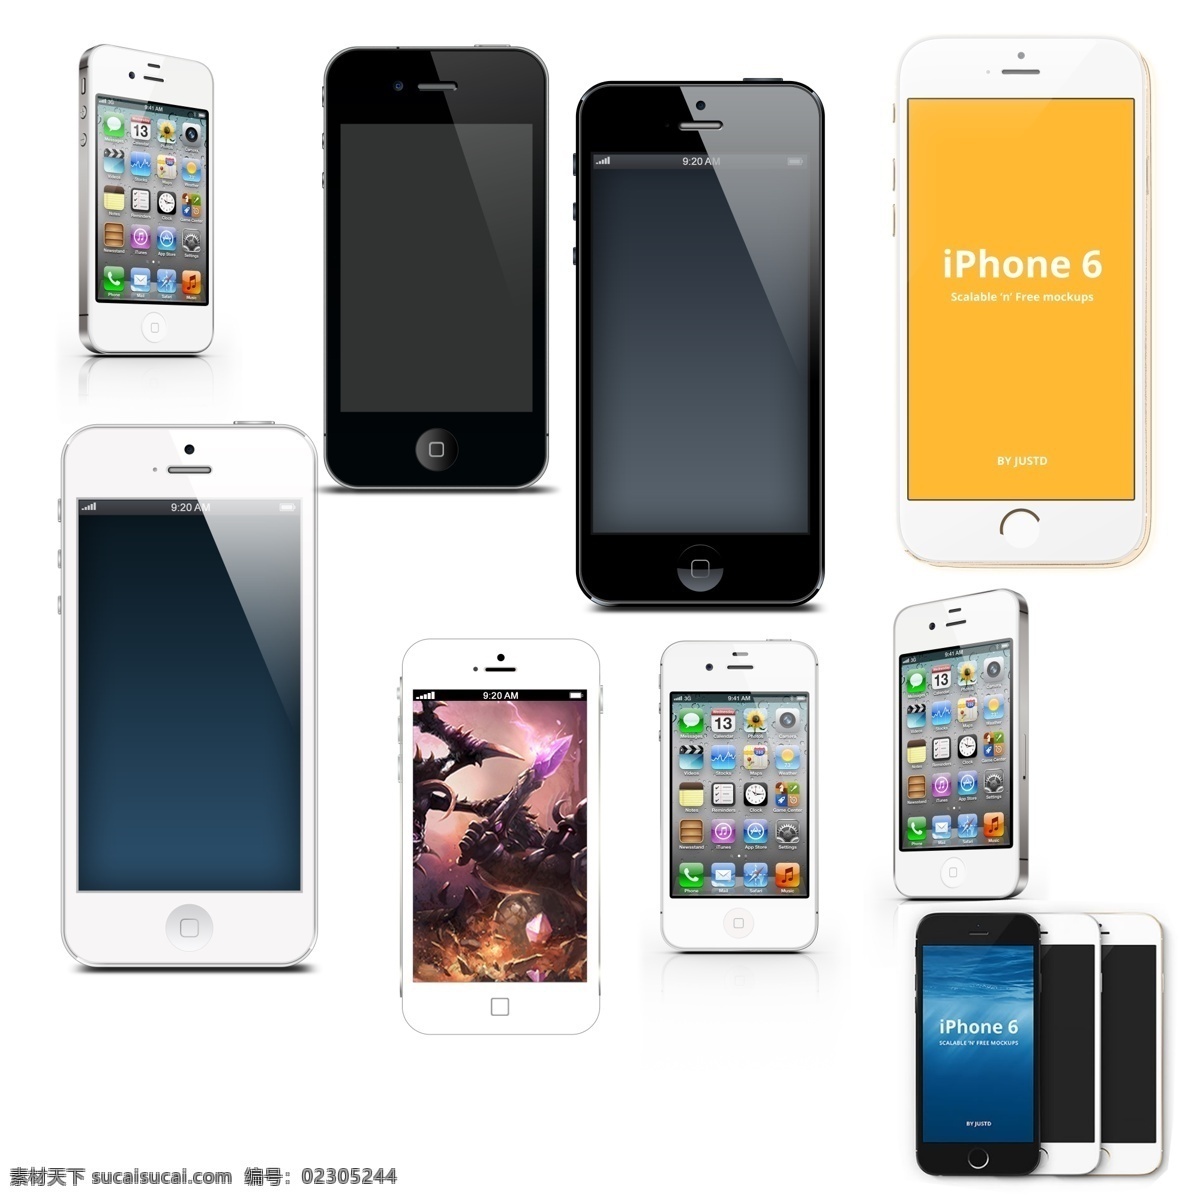 苹果手机海报 苹果手机广告 苹果手机灯箱 苹果手机宣传 苹果手机 iphone 5s 手机苹果 手机 苹果手机展板